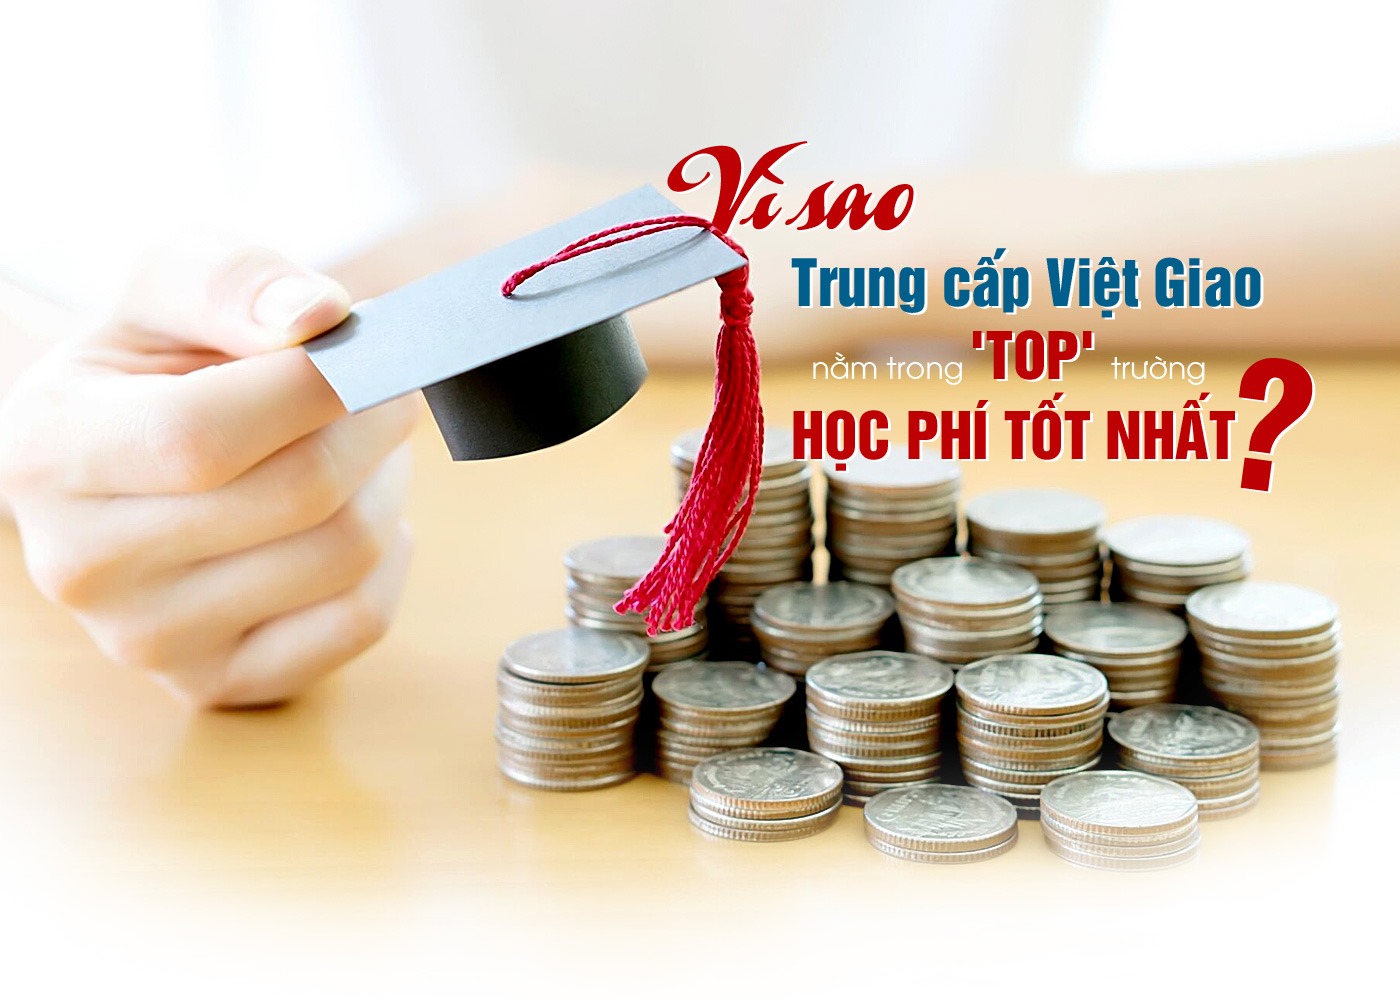 Vì sao trung cấp Việt Giao nằm trong 'top' trường học phí tốt nhất - Ảnh 1